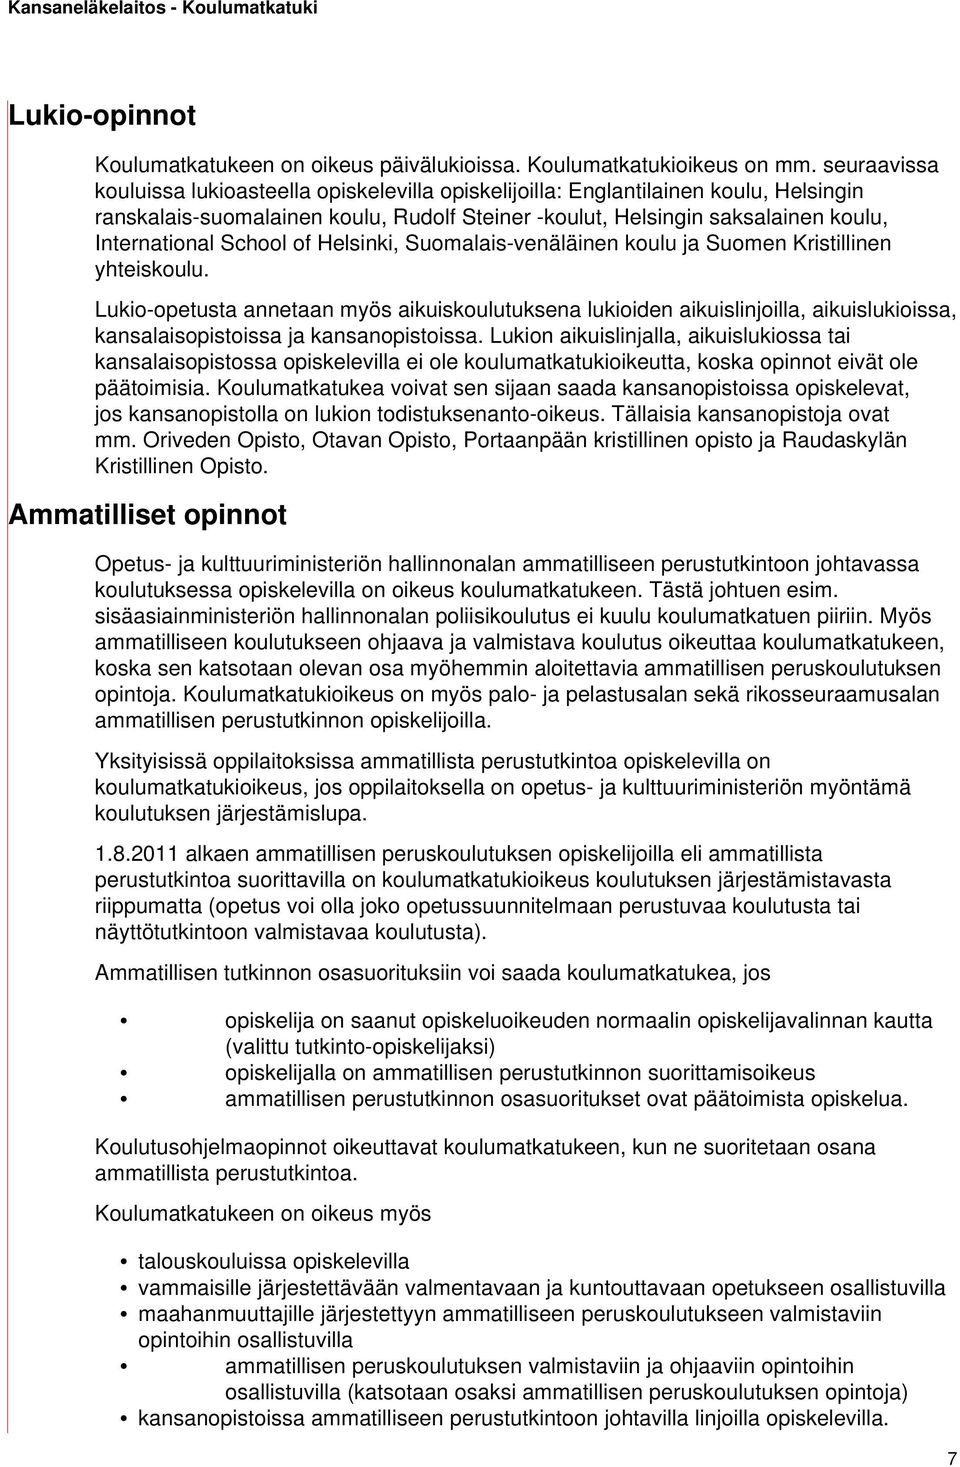 School of Helsinki, Suomalais-venäläinen koulu ja Suomen Kristillinen yhteiskoulu.